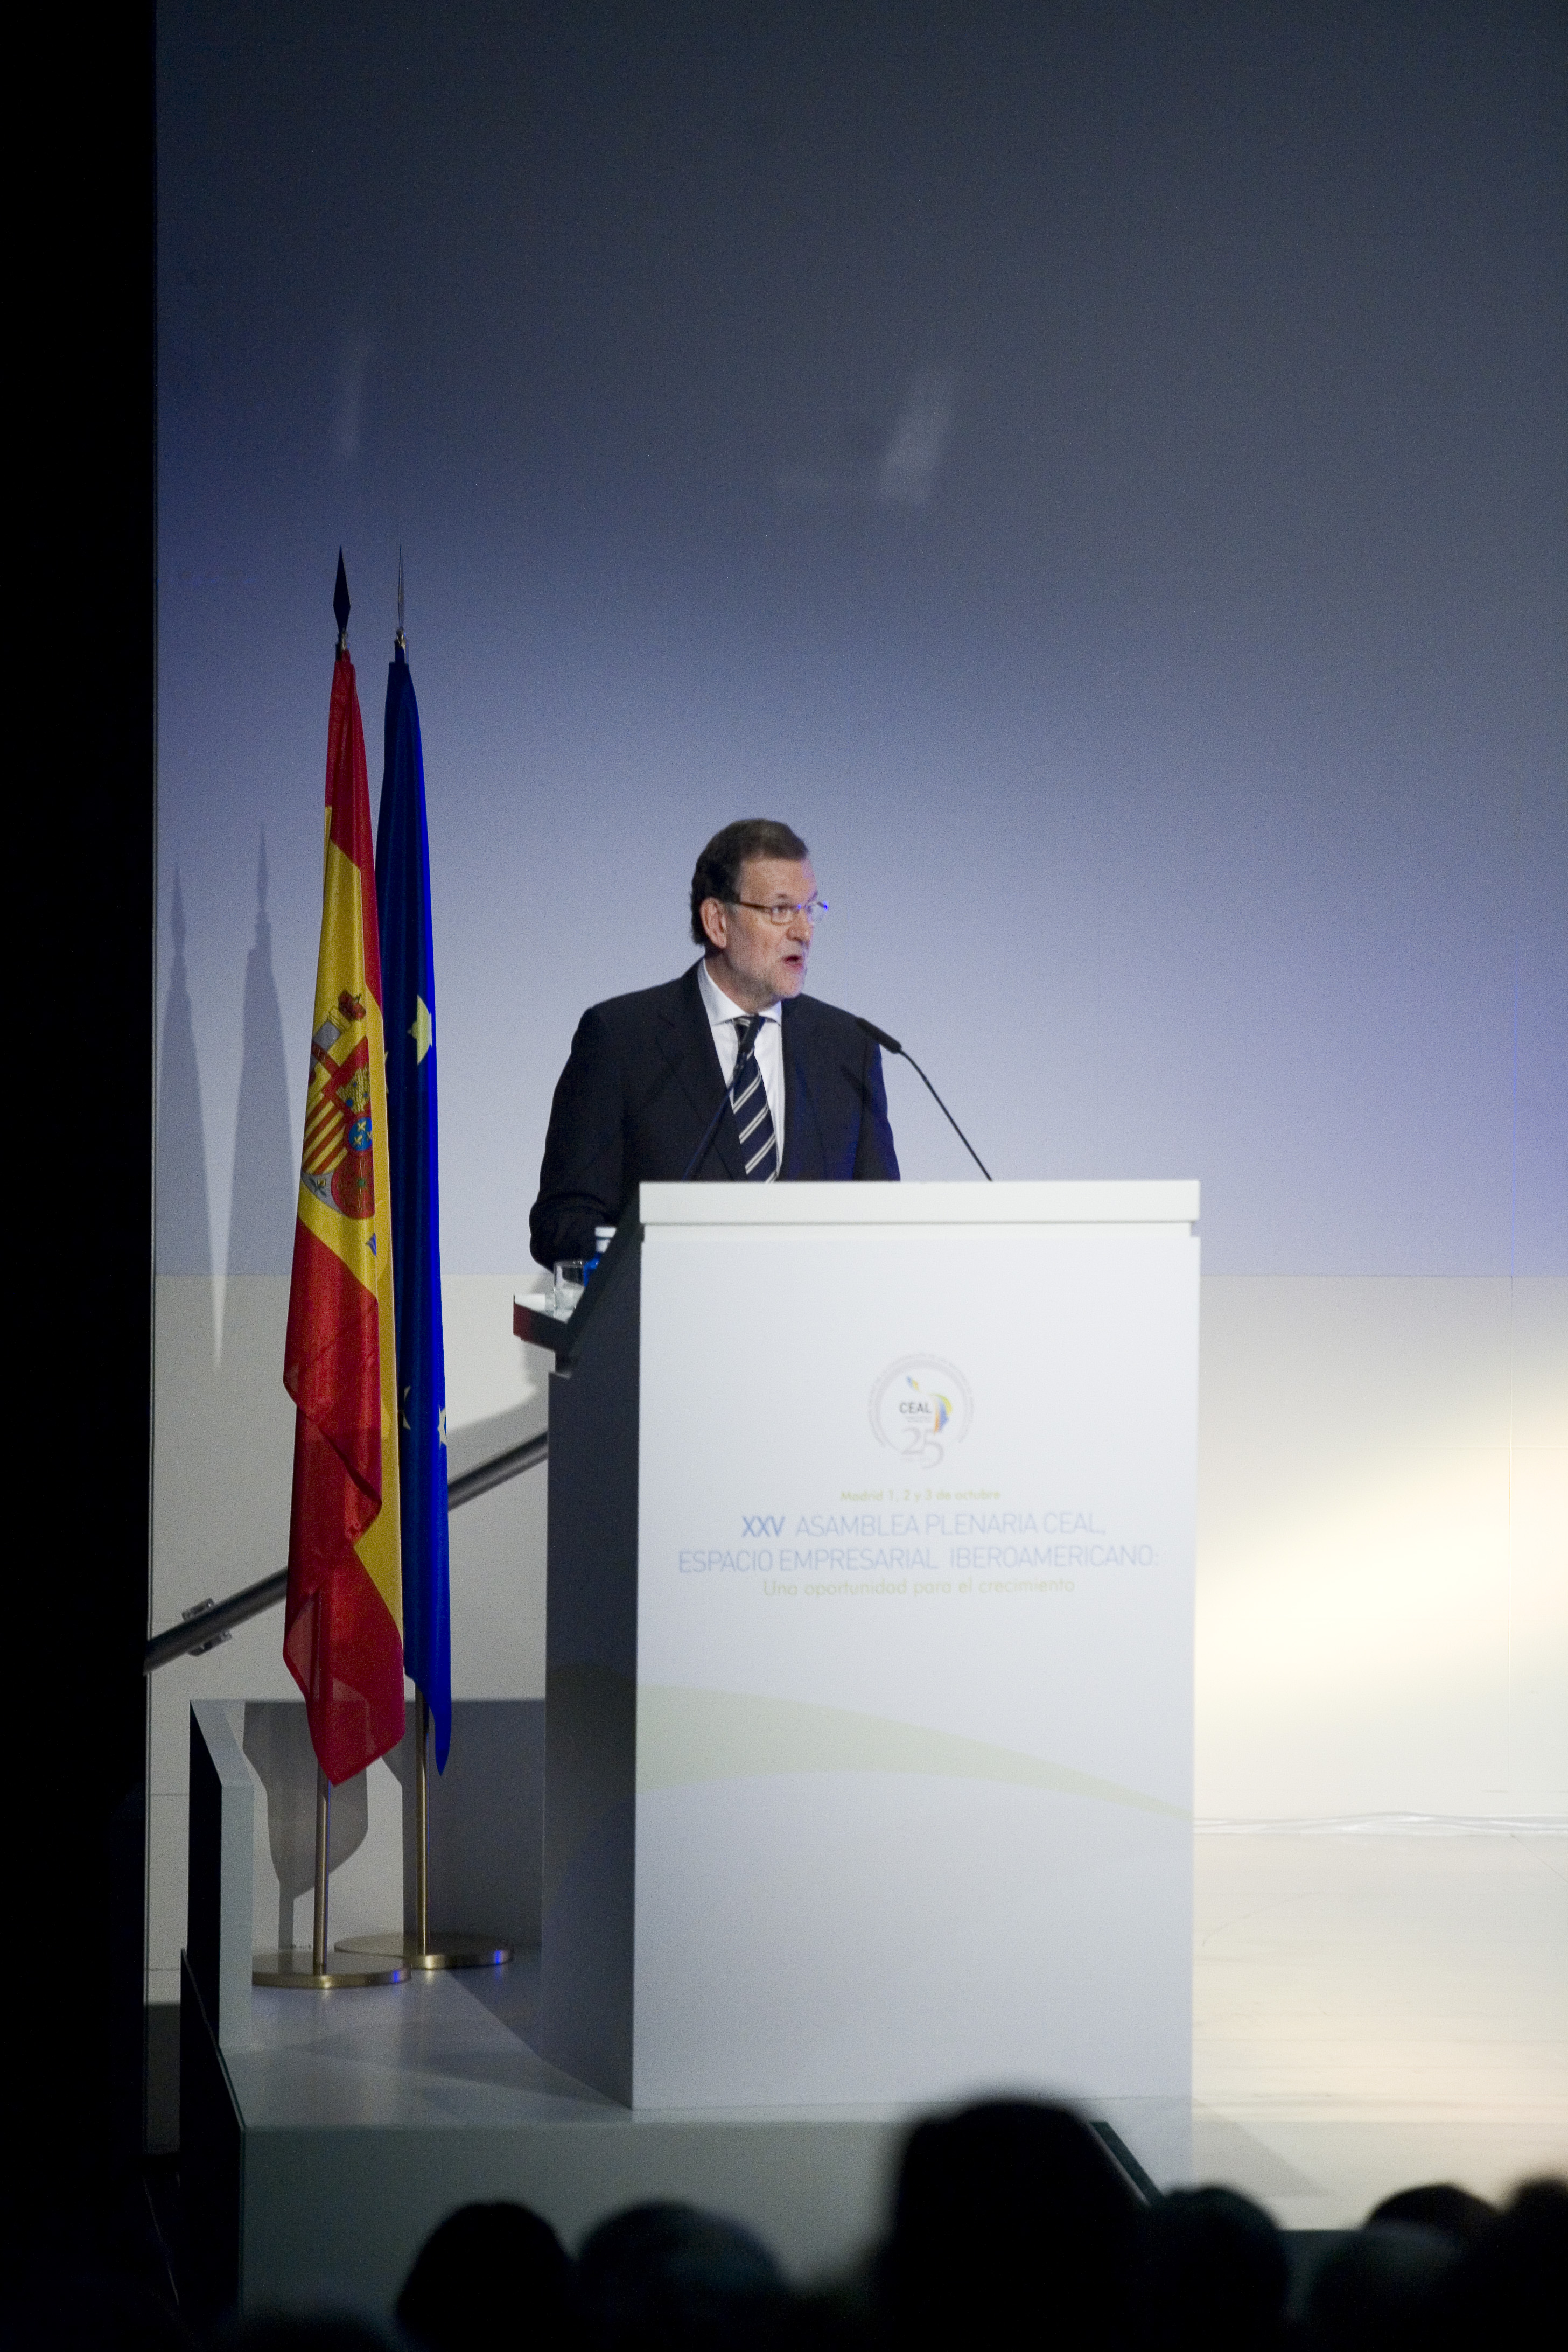 El presidente Mariano Rajoy inaugura la XXV Asamblea Plenaria CEAL